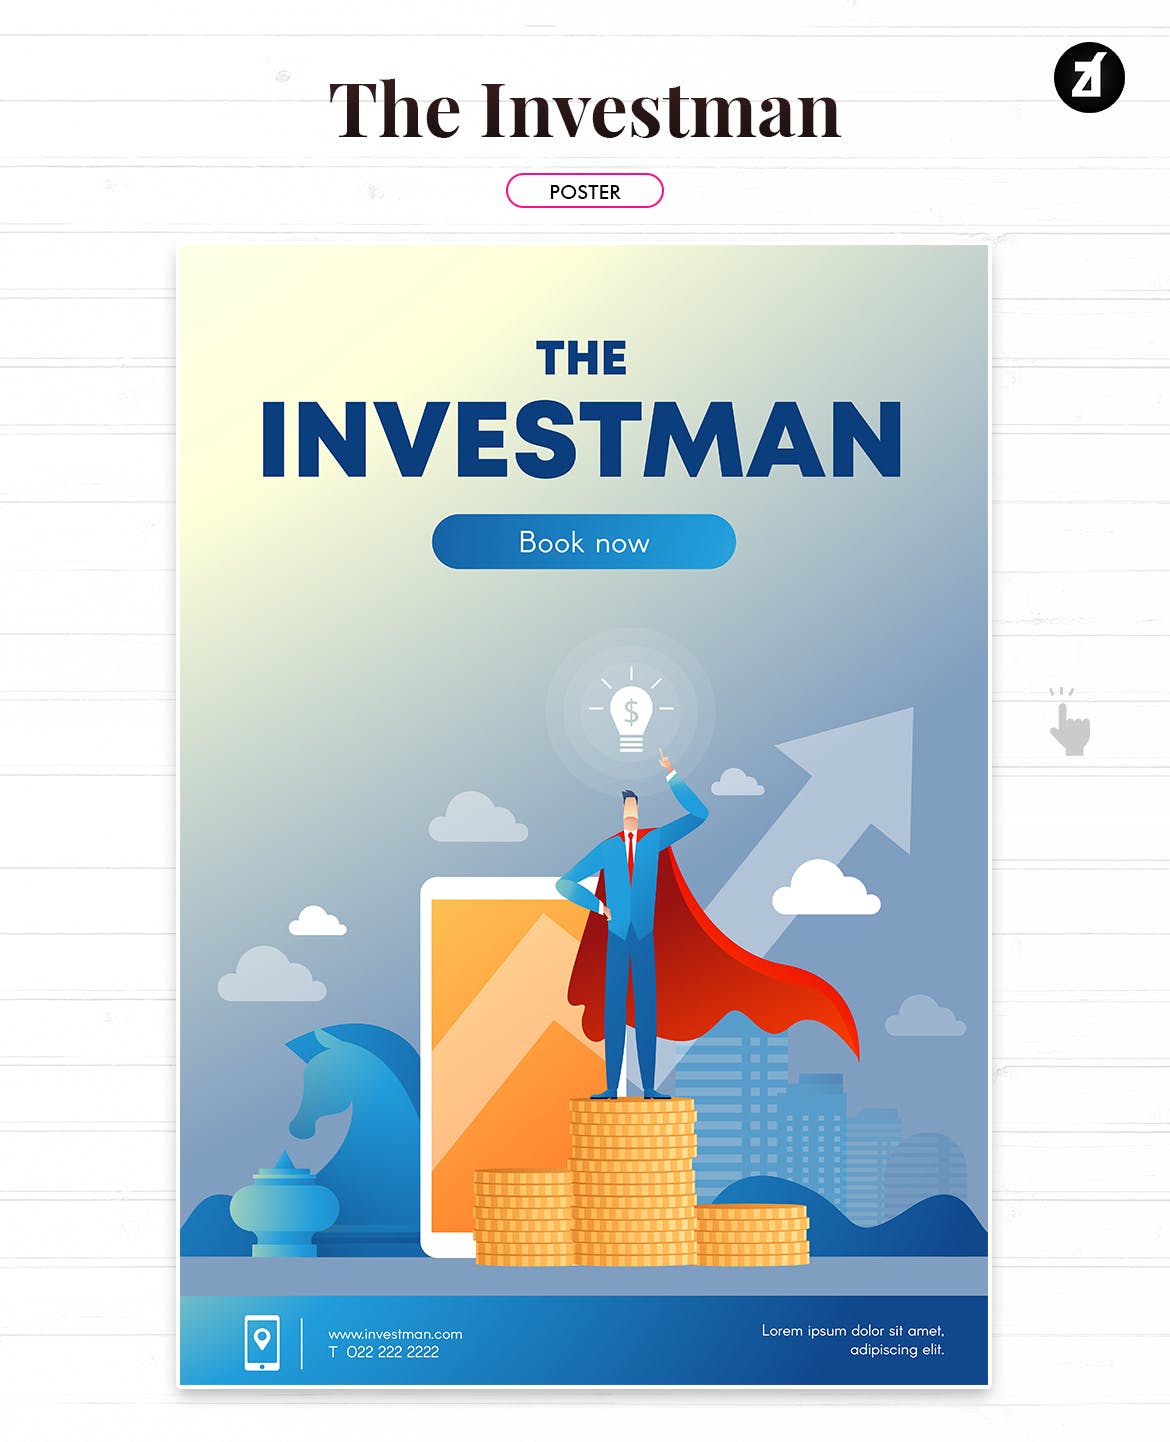 投资者主题矢量大洋岛精选概念插画素材 The investman illustration with text layout插图1